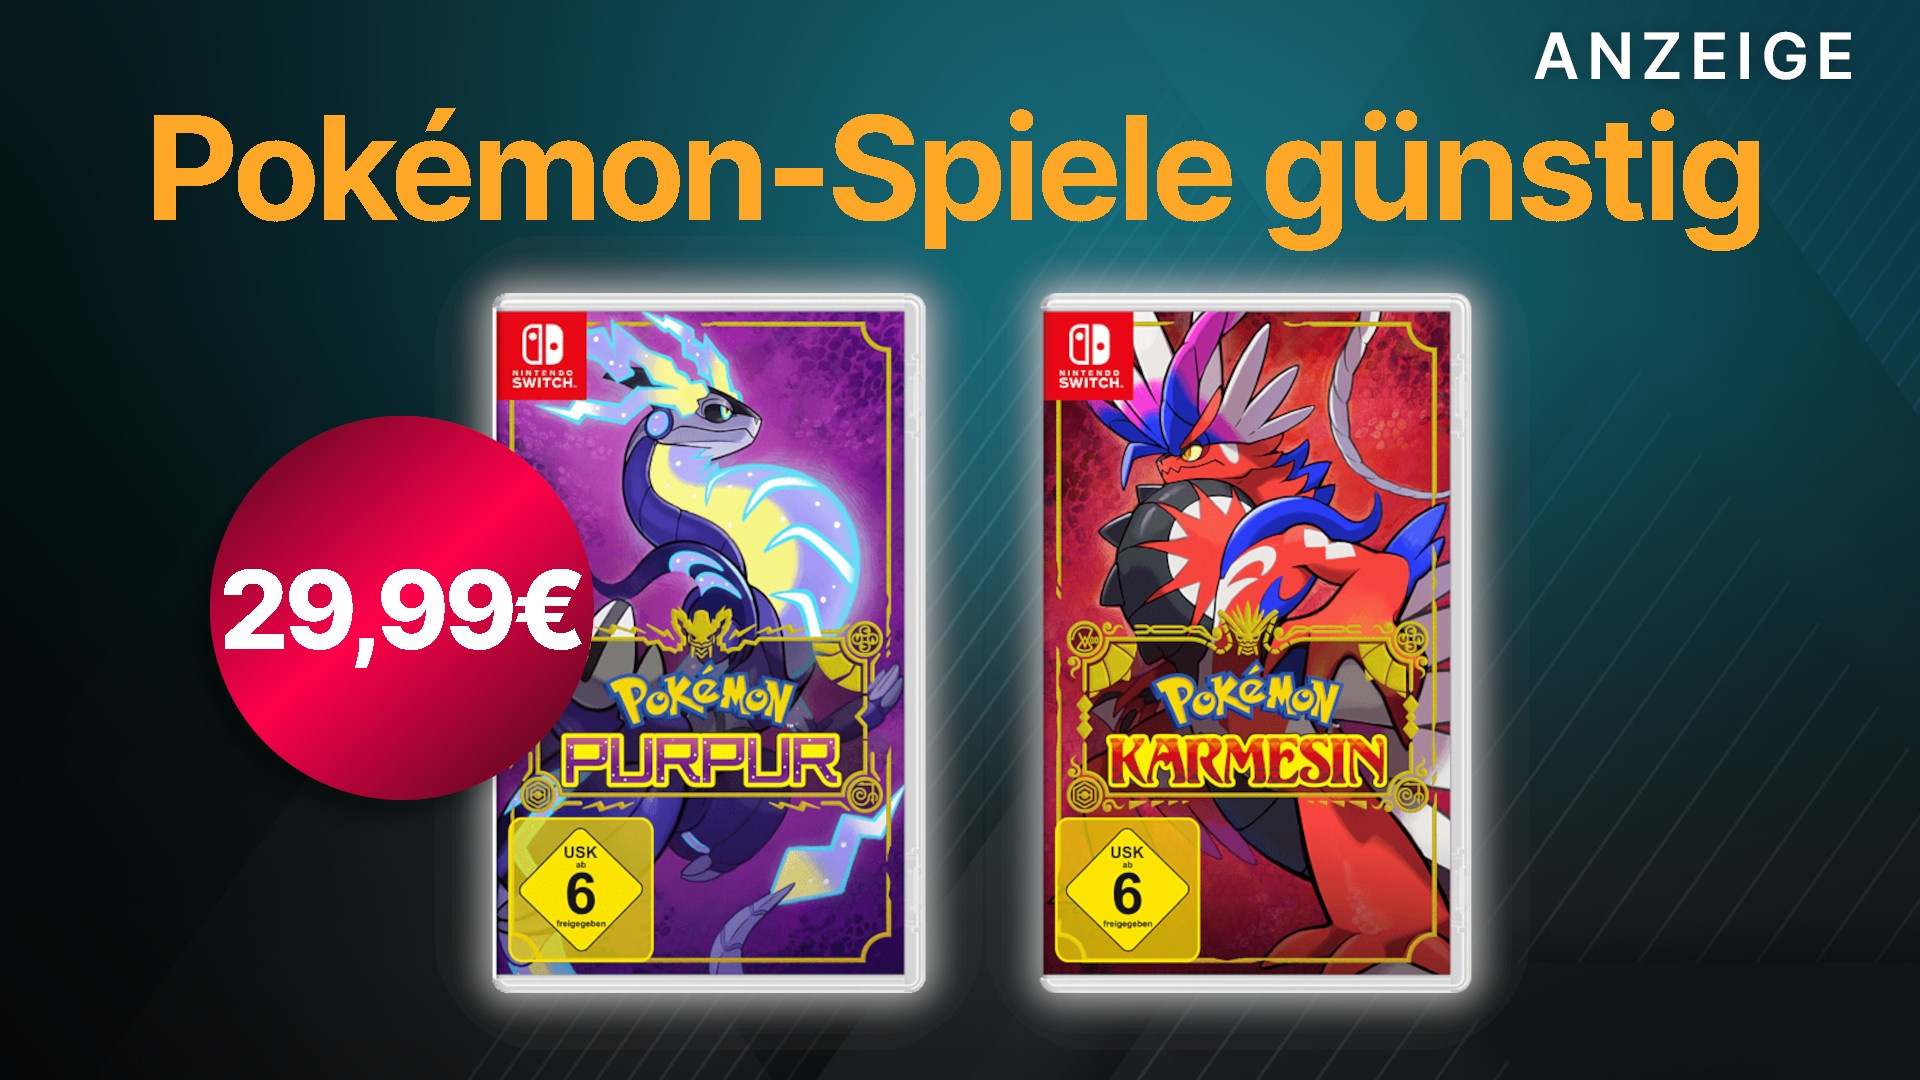 Nur noch heute: Pokémon Purpur Switch im Karmesin für & Angebot Nintendo 29,99€ für